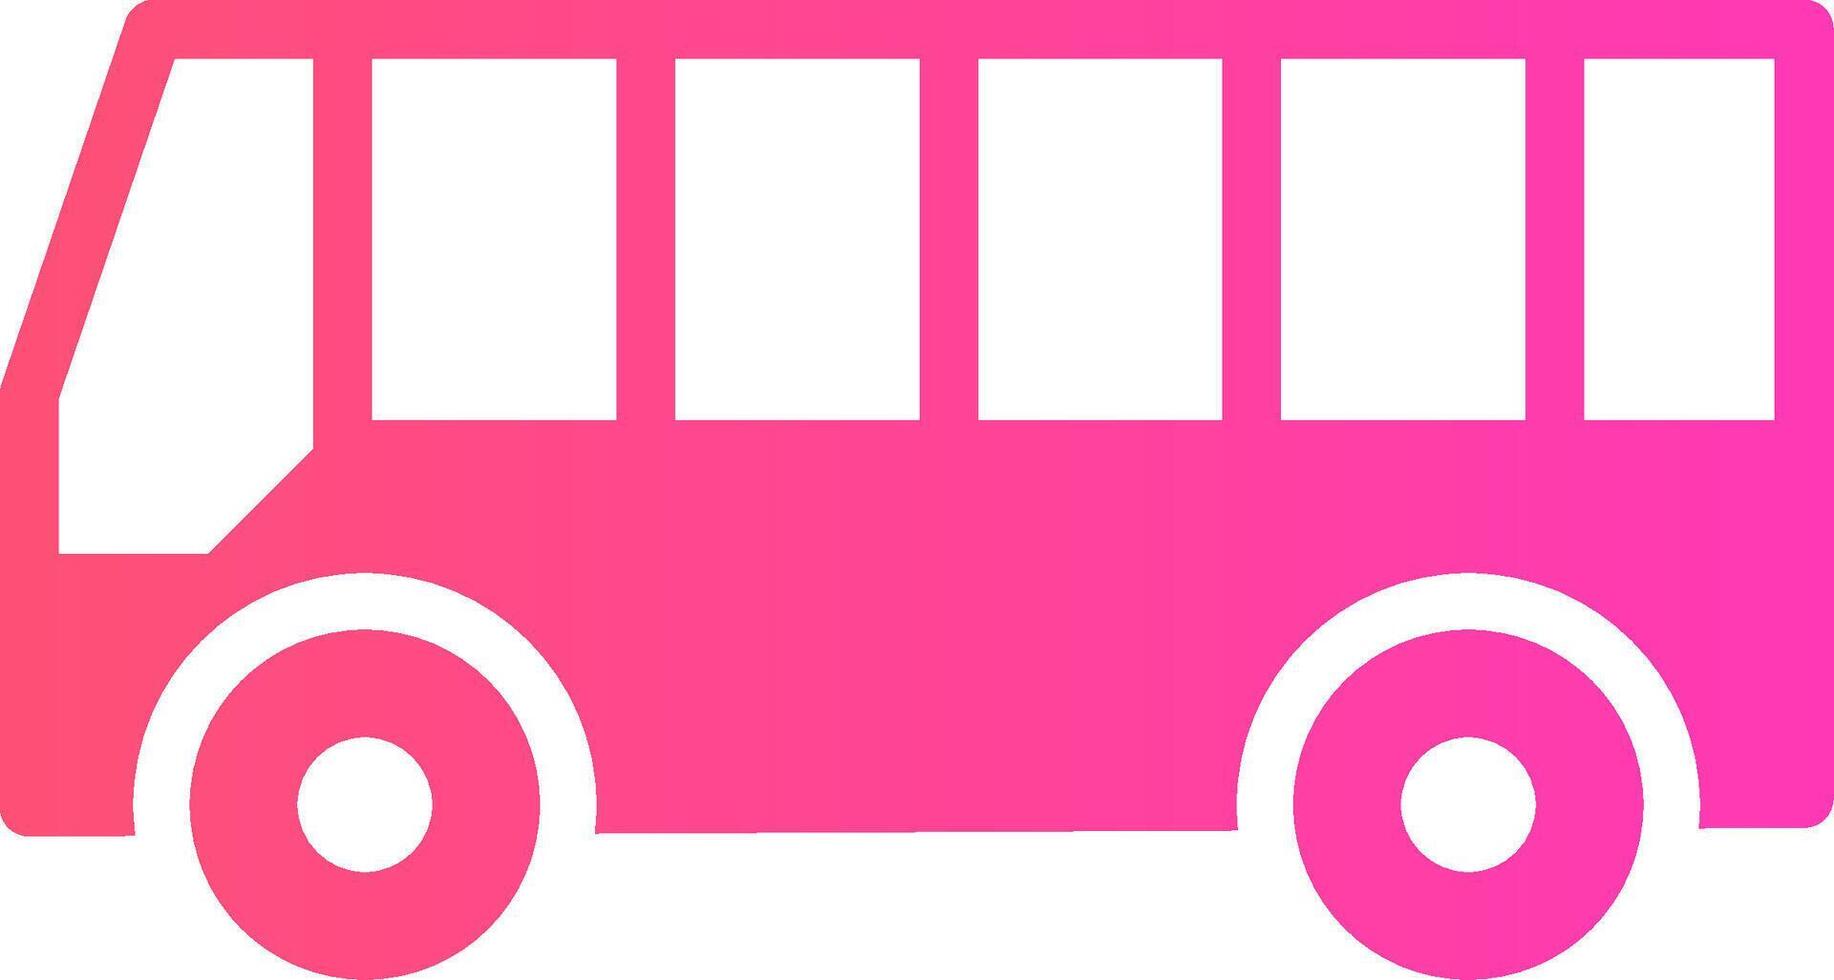 diseño de icono creativo de autobús vector